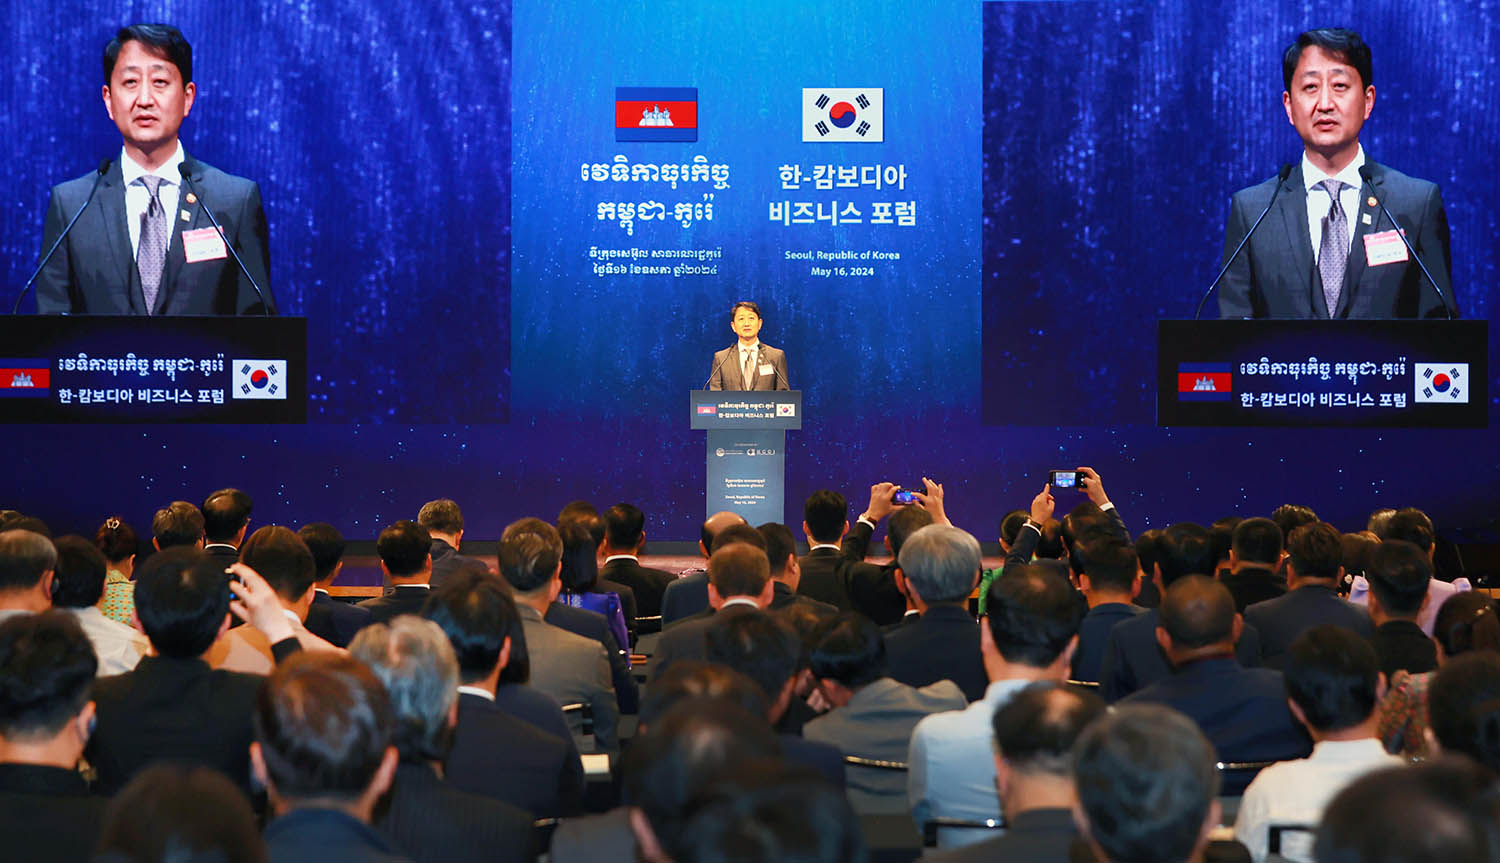 Korea-Cambodia Business Forum